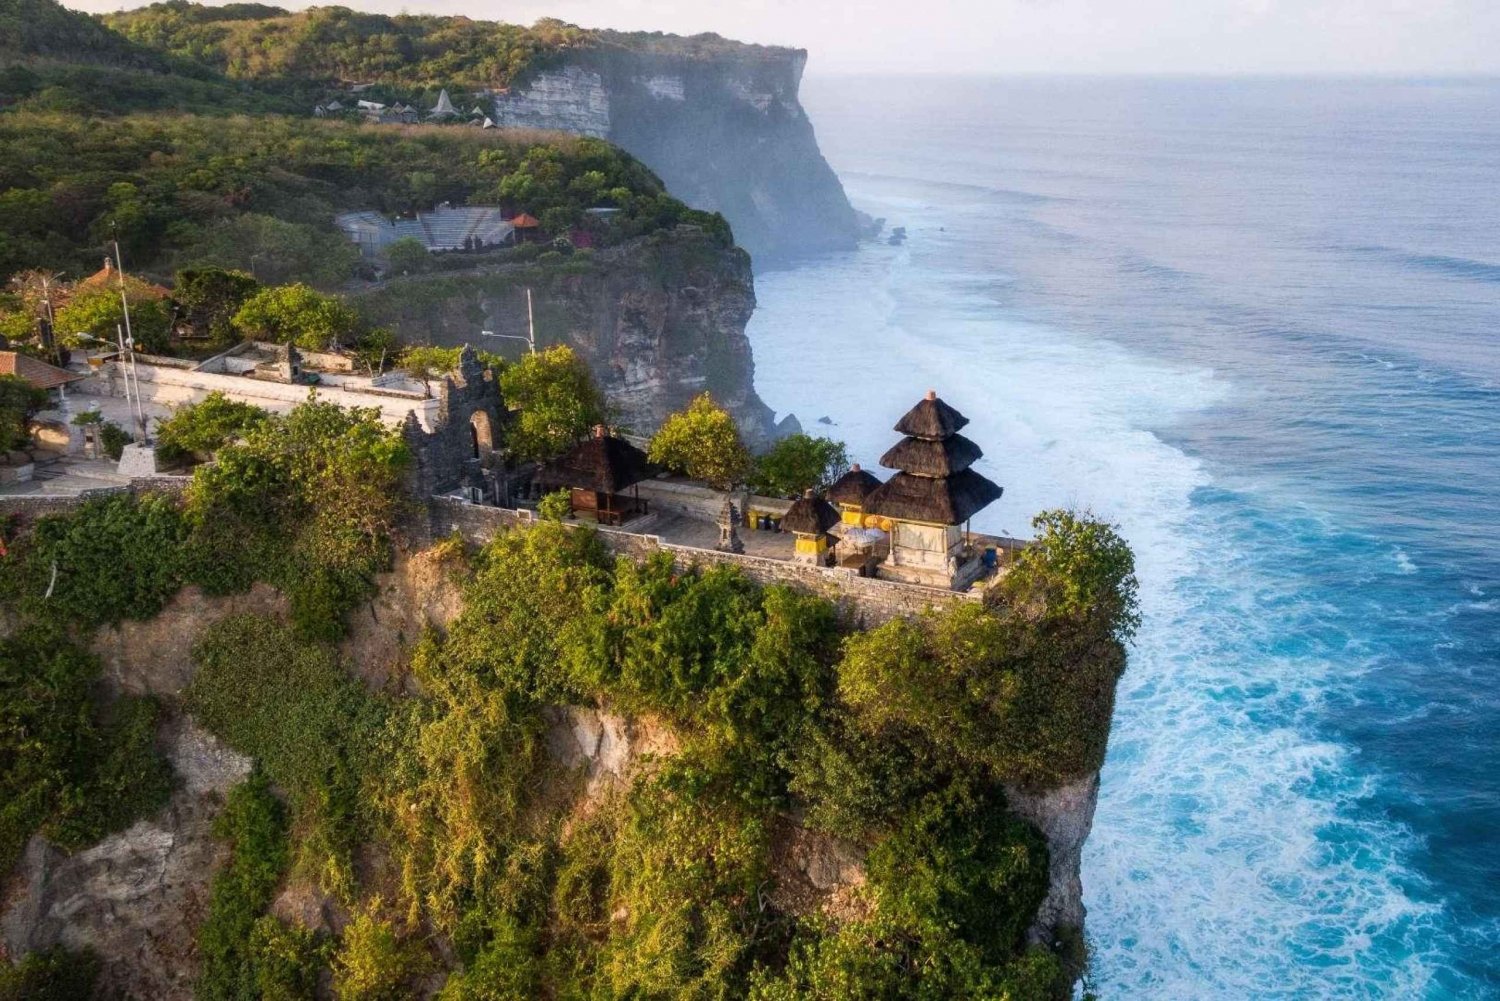 Bali: Lo más destacado Excursión de un día al Templo de Uluwatu y las Playas del Sur